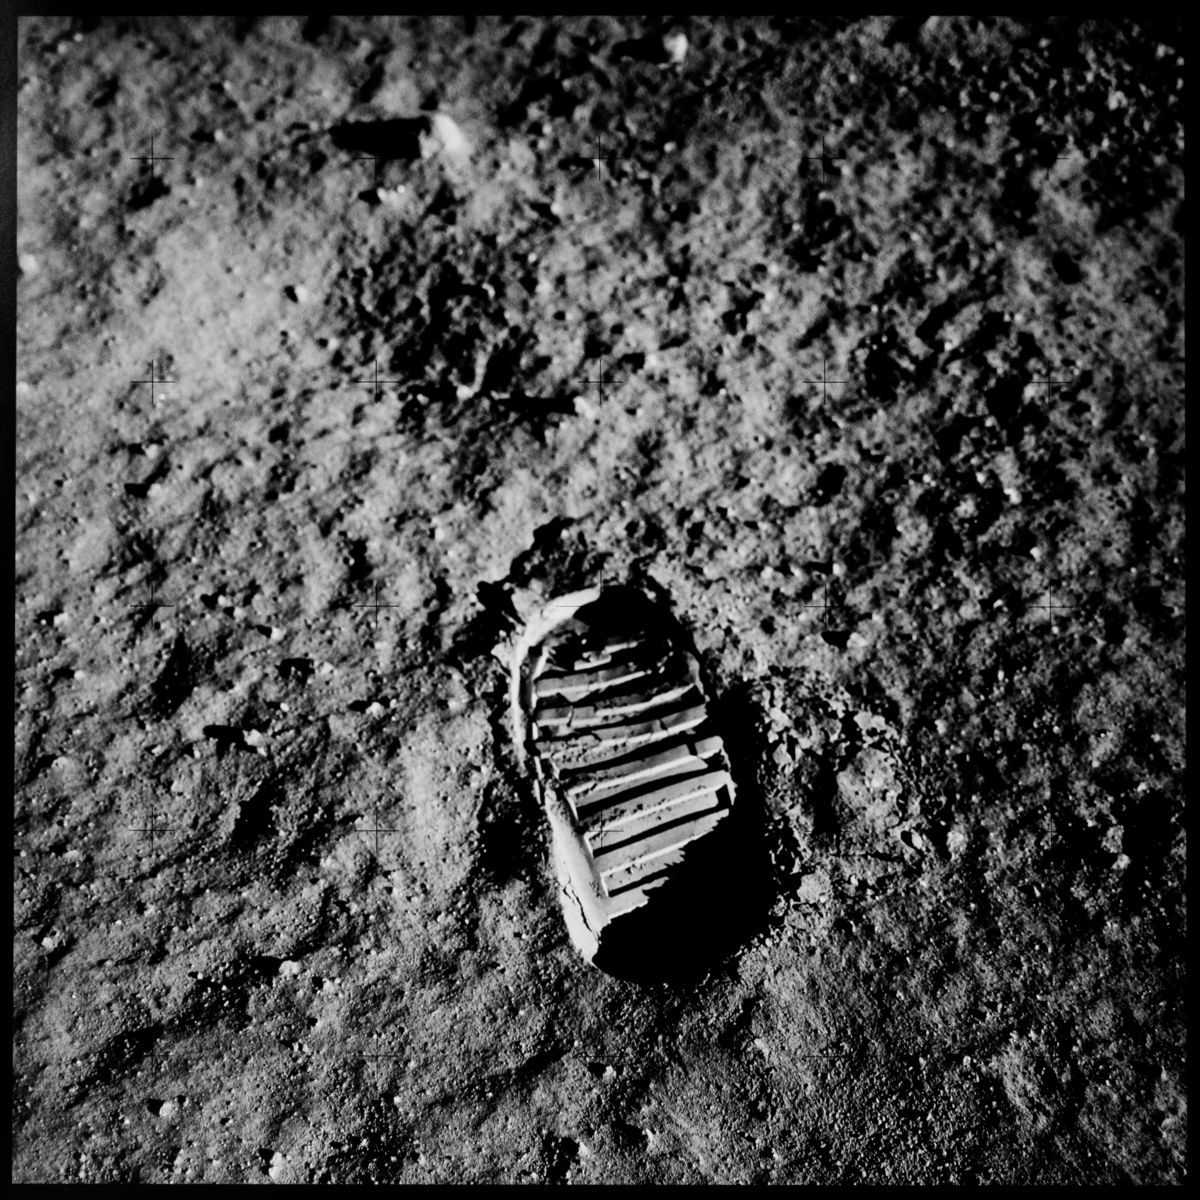 Aldrin's boot print, Apollo 11